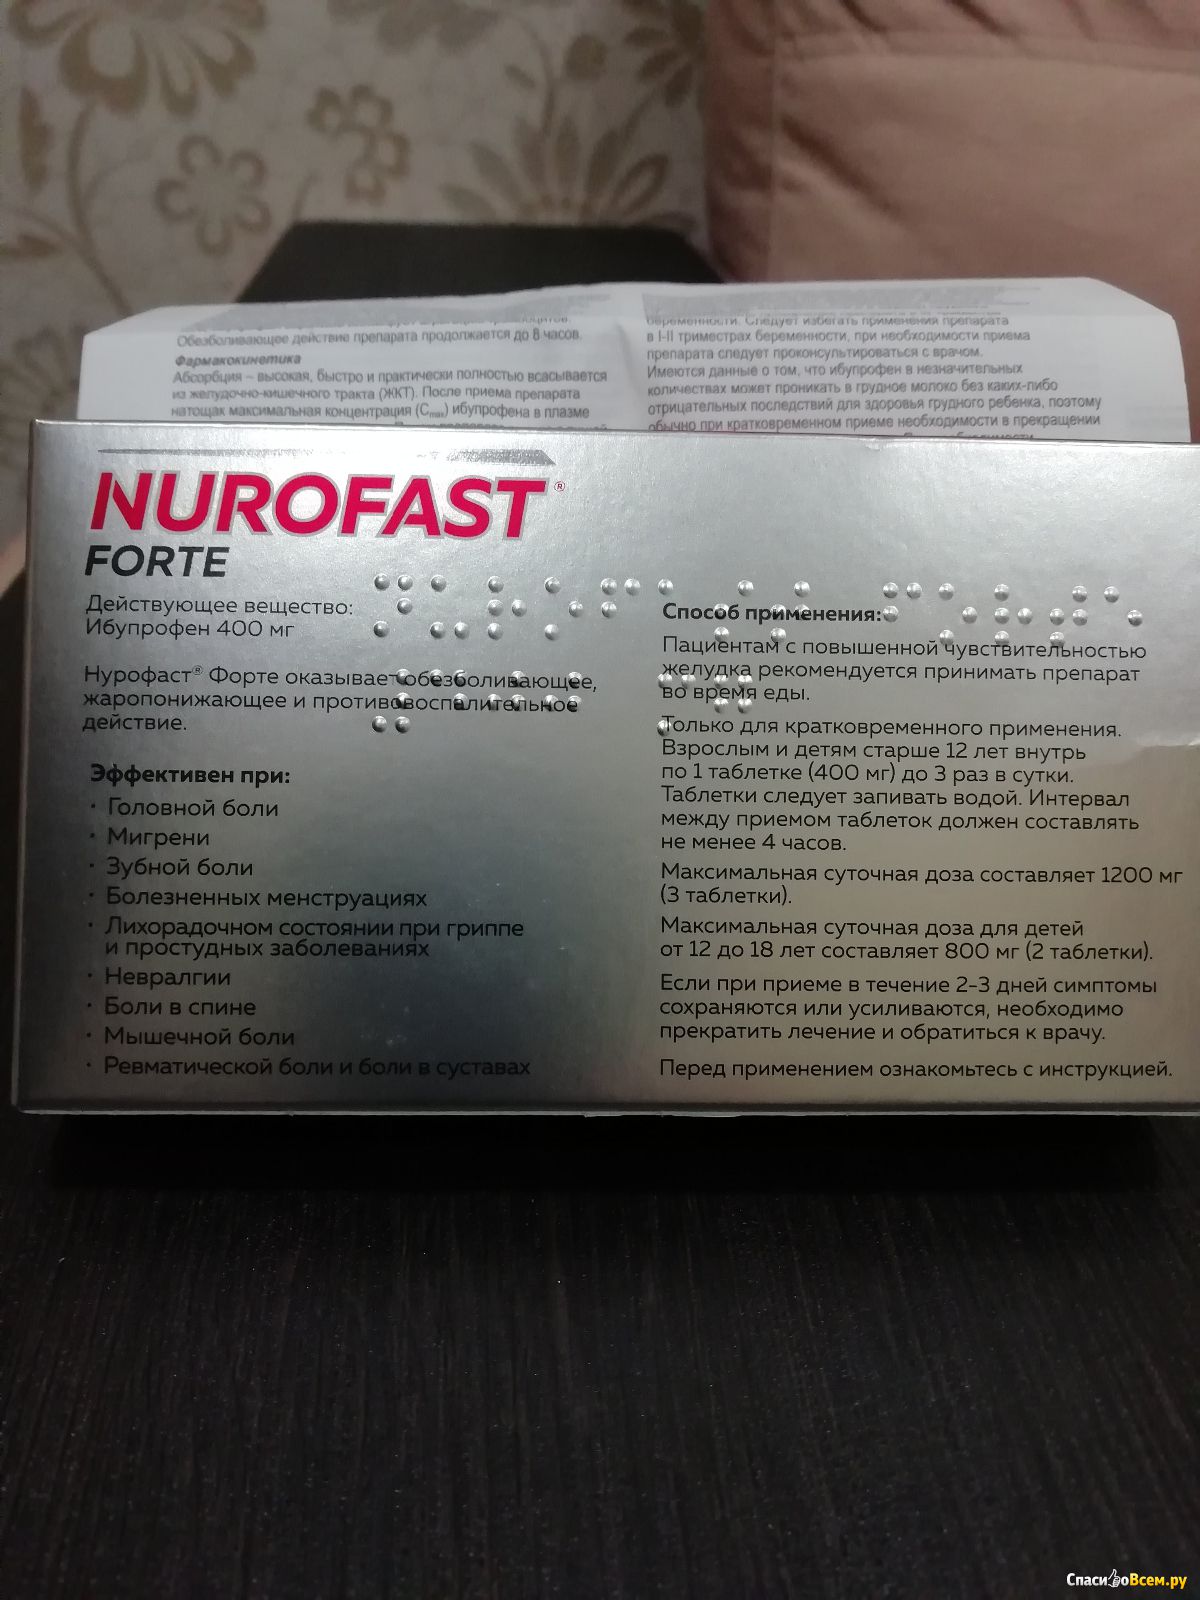 Отзыв про Нестероидный противовоспалительный препарат Нурофаст форте .